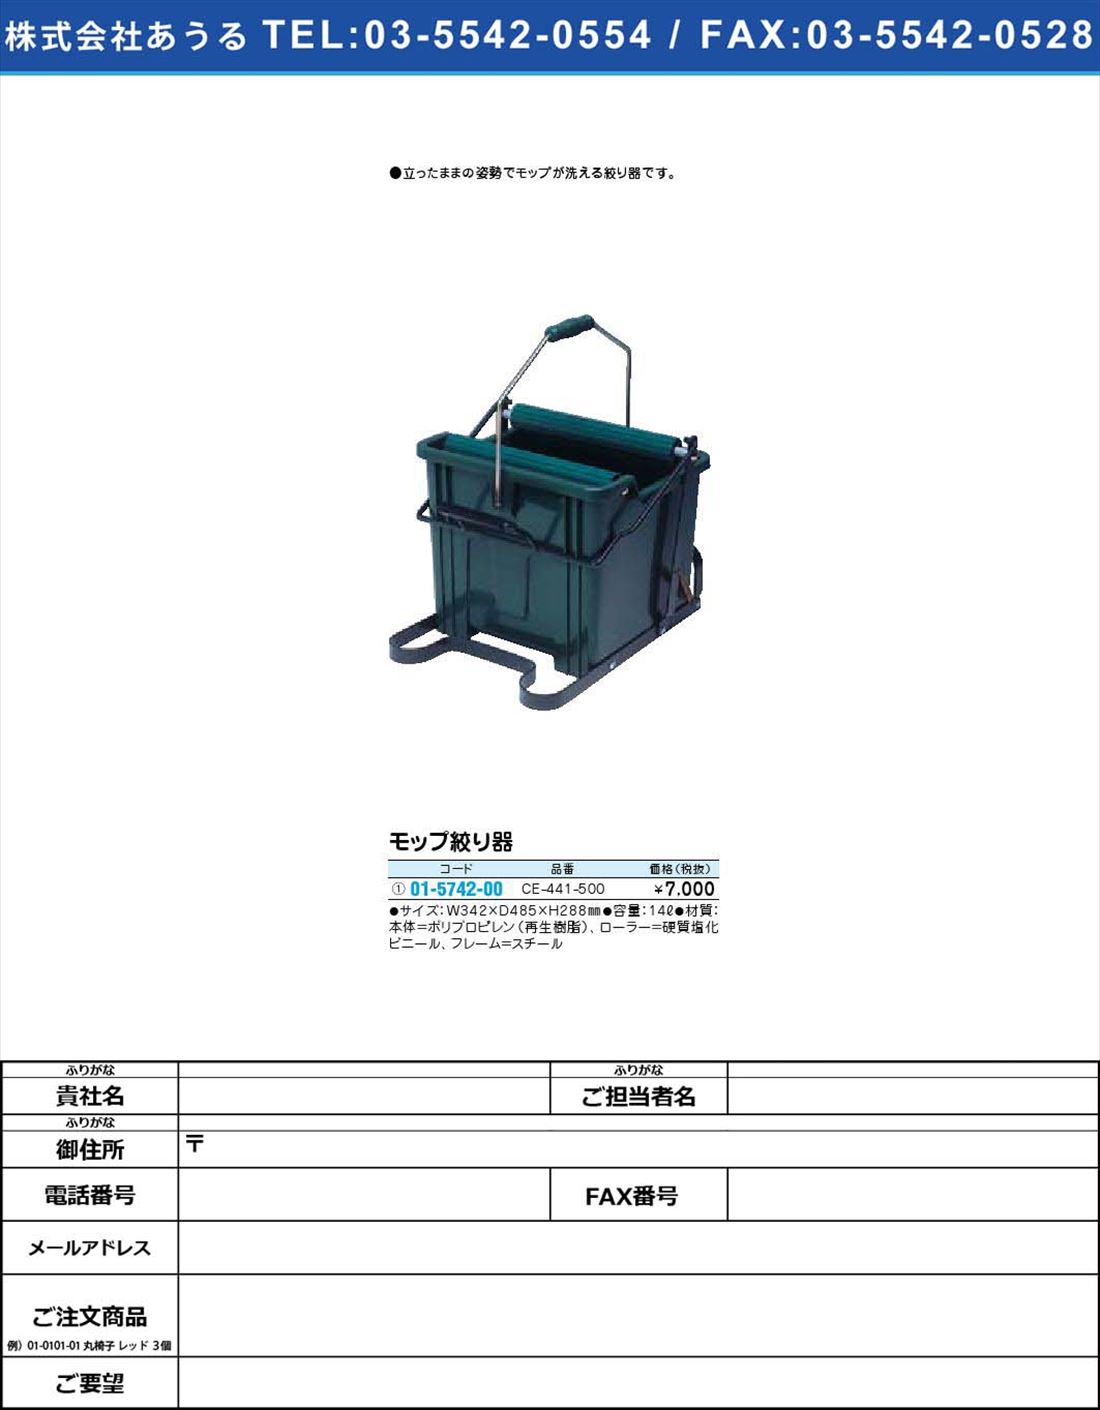 モップ絞り器 CE-441-500(01-5742-00)【1個単位】【2009年カタログ商品】